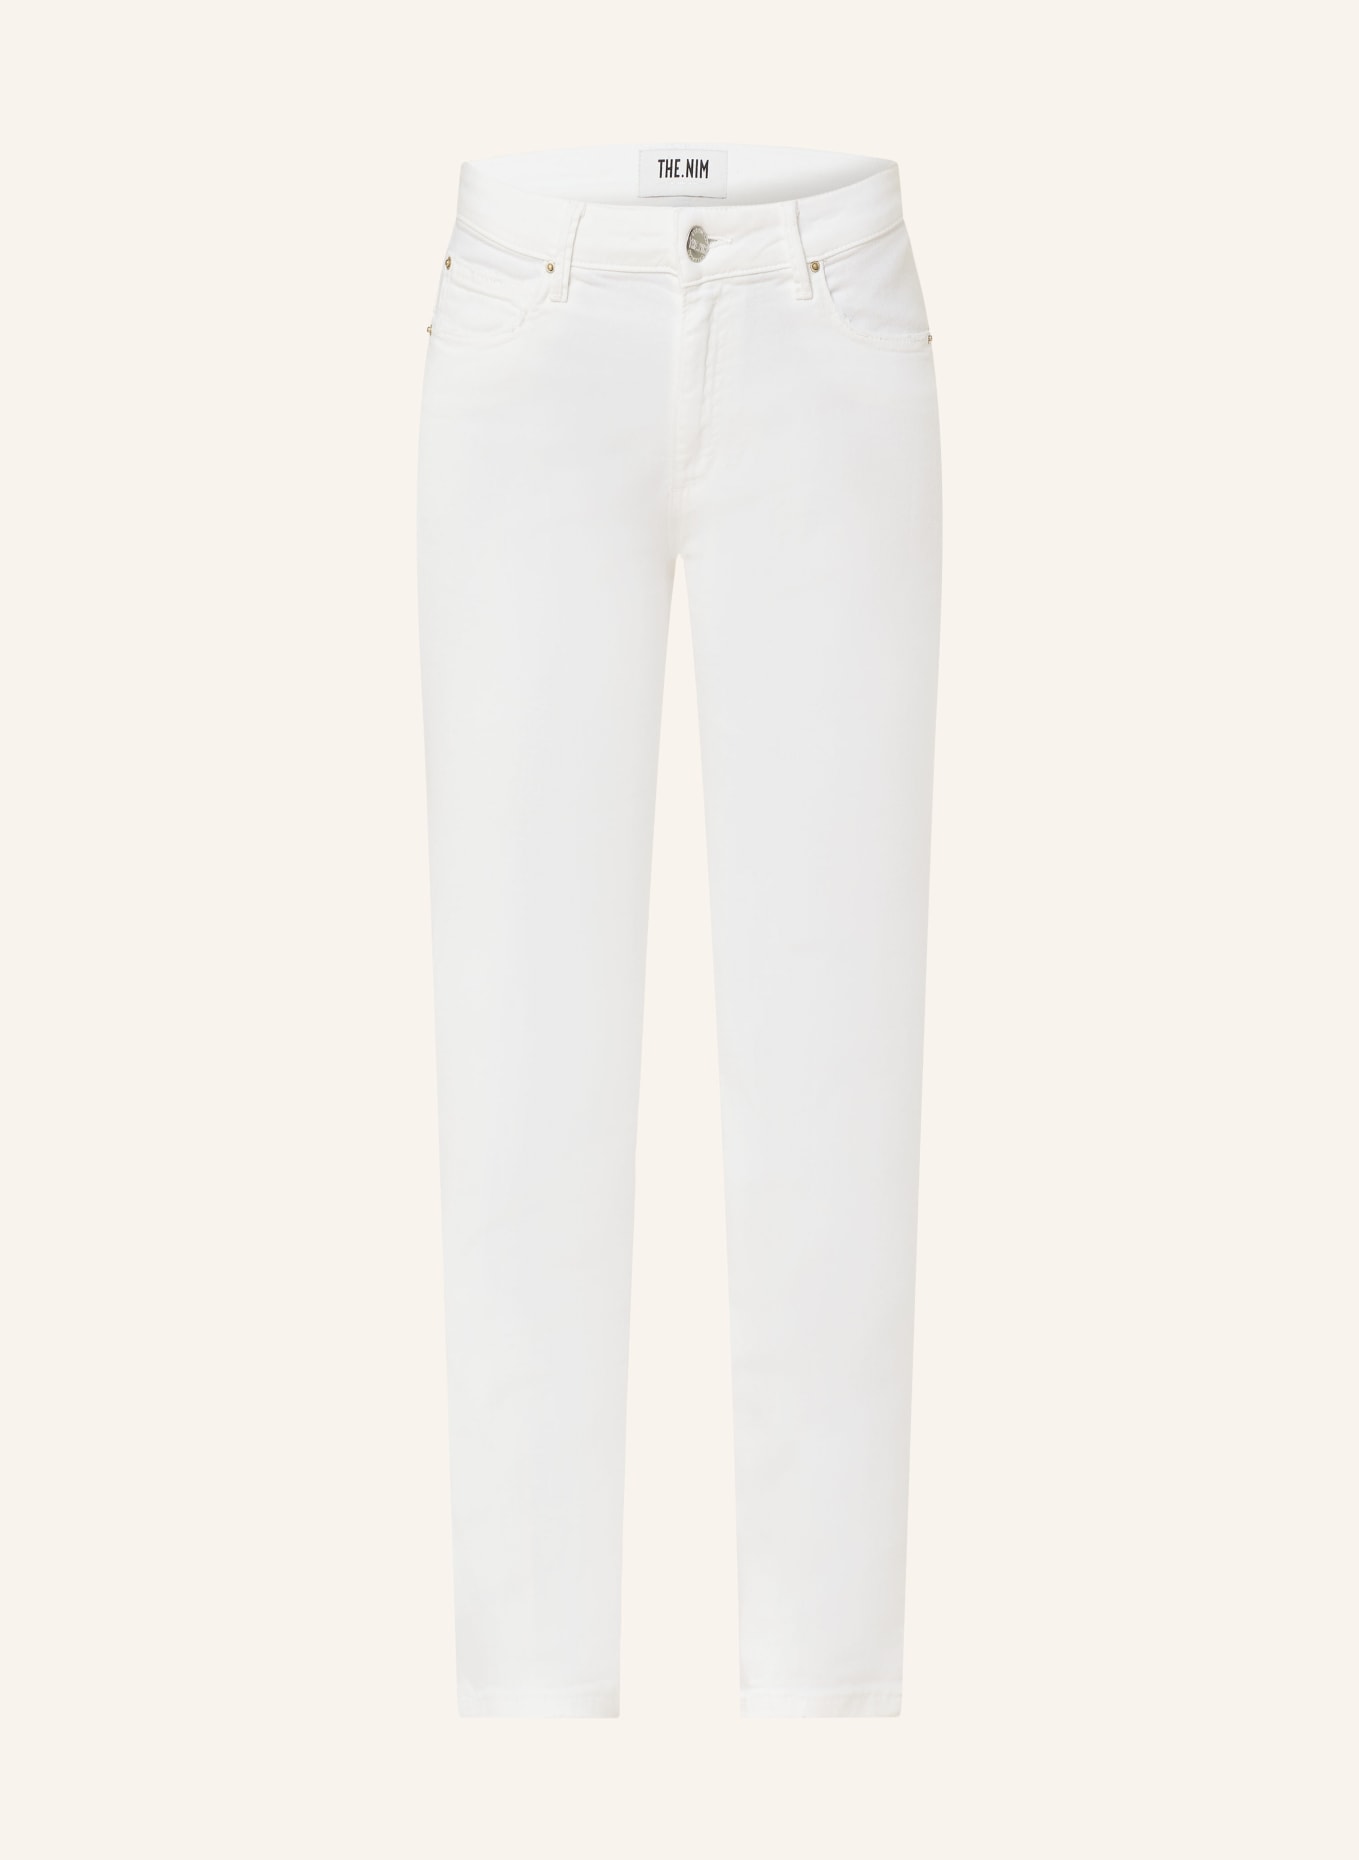 THE.NIM STANDARD Jeans BONNIE, Farbe: C001-WHT WHITE (Bild 1)